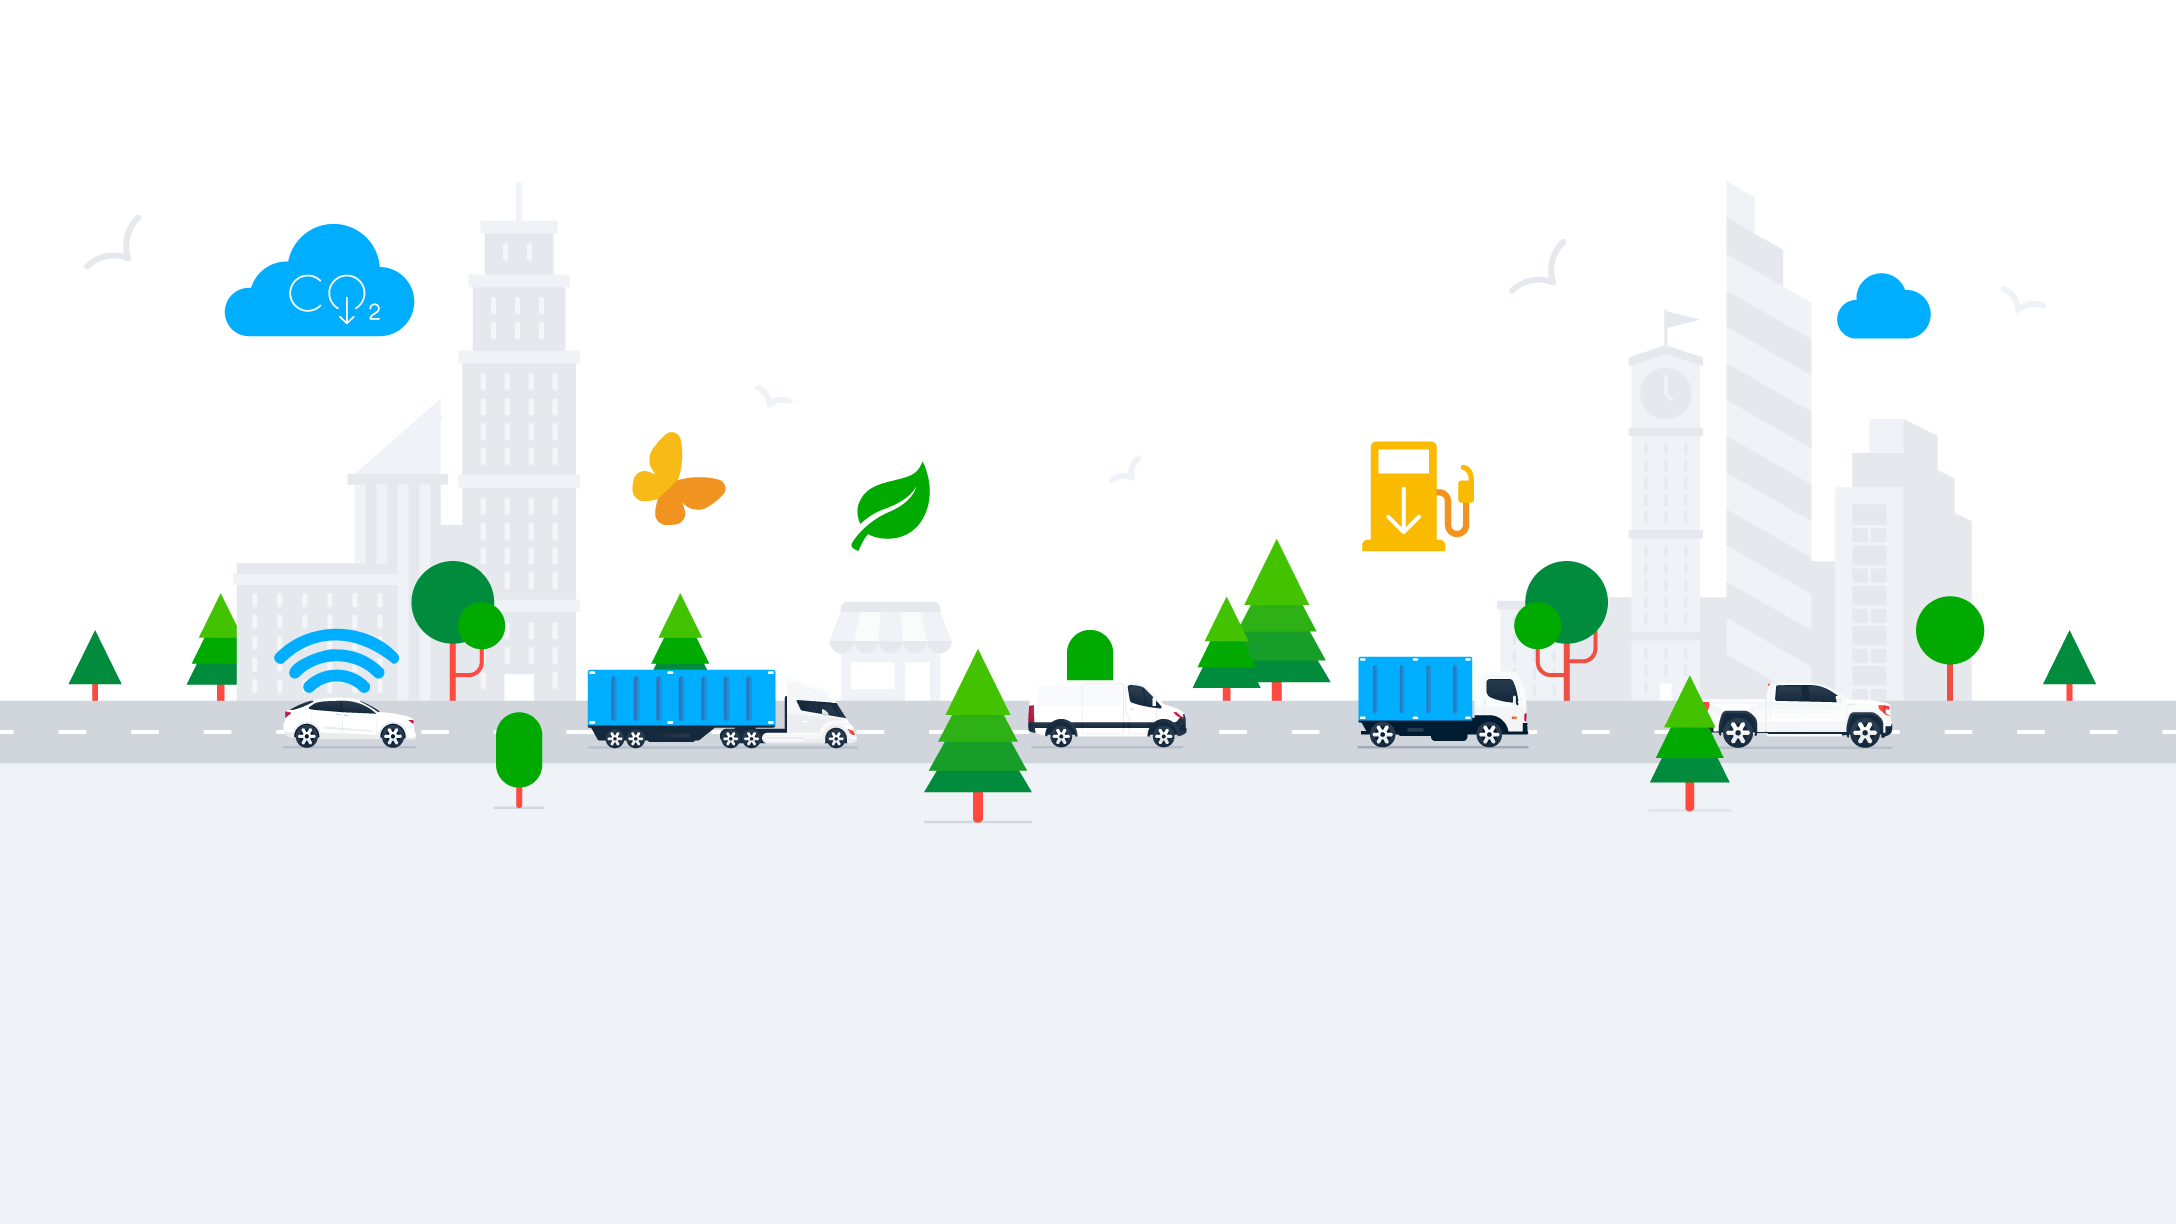 Grafik einer Stadt mit einer Verkehrssituation mit unterschiedlichen Fahrzeugen auf einer Straße, Bäumen und anderen bunten Icons.